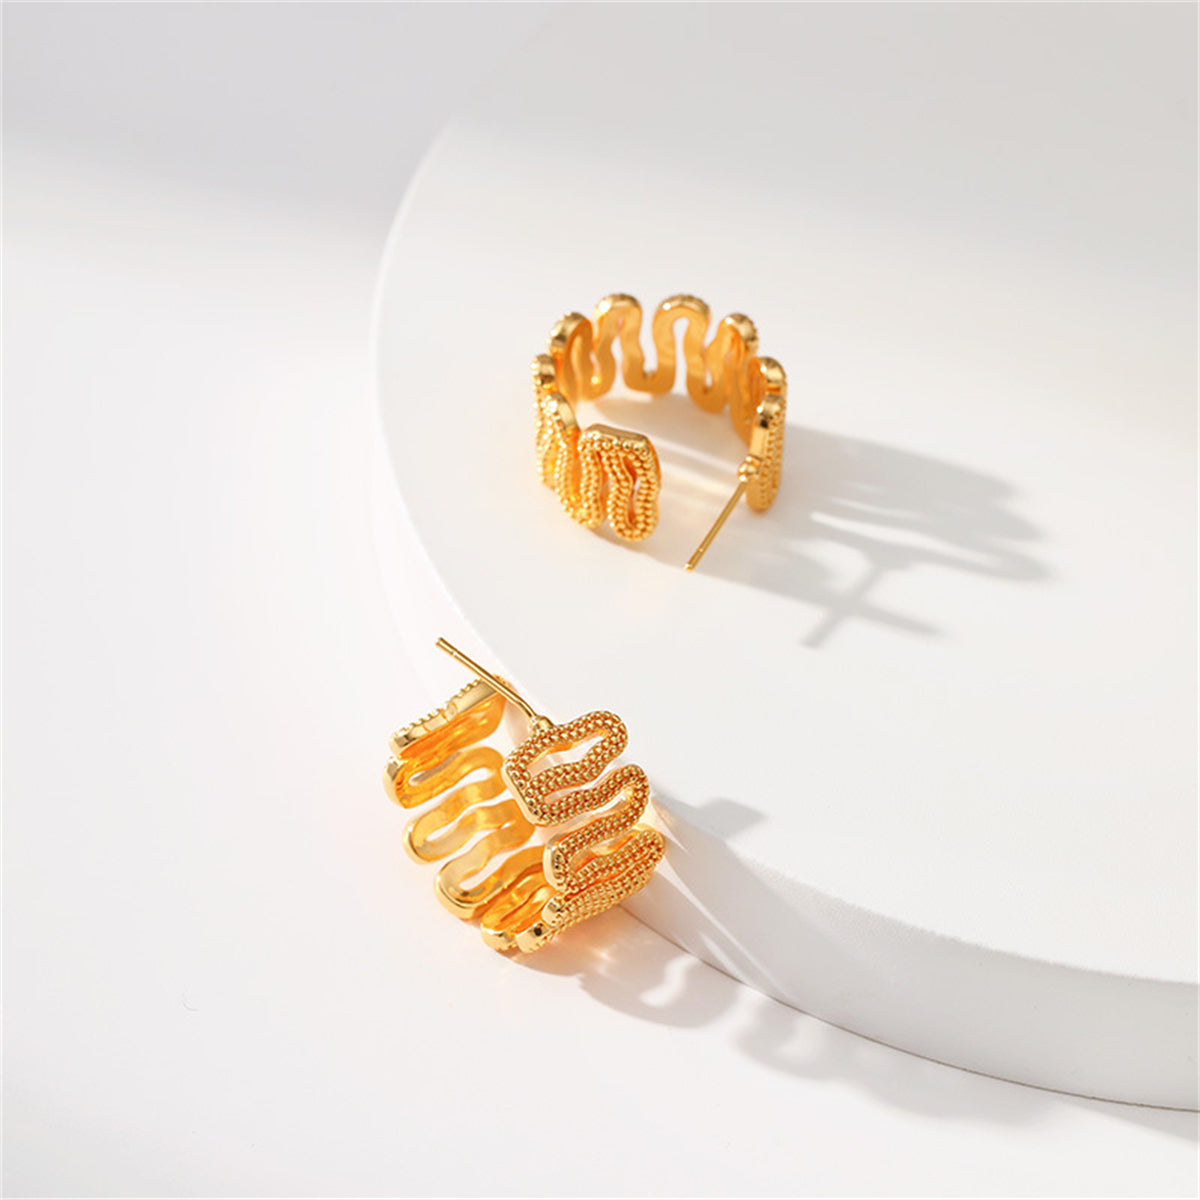 18K Gold-Plated Snake Huggie Earrings